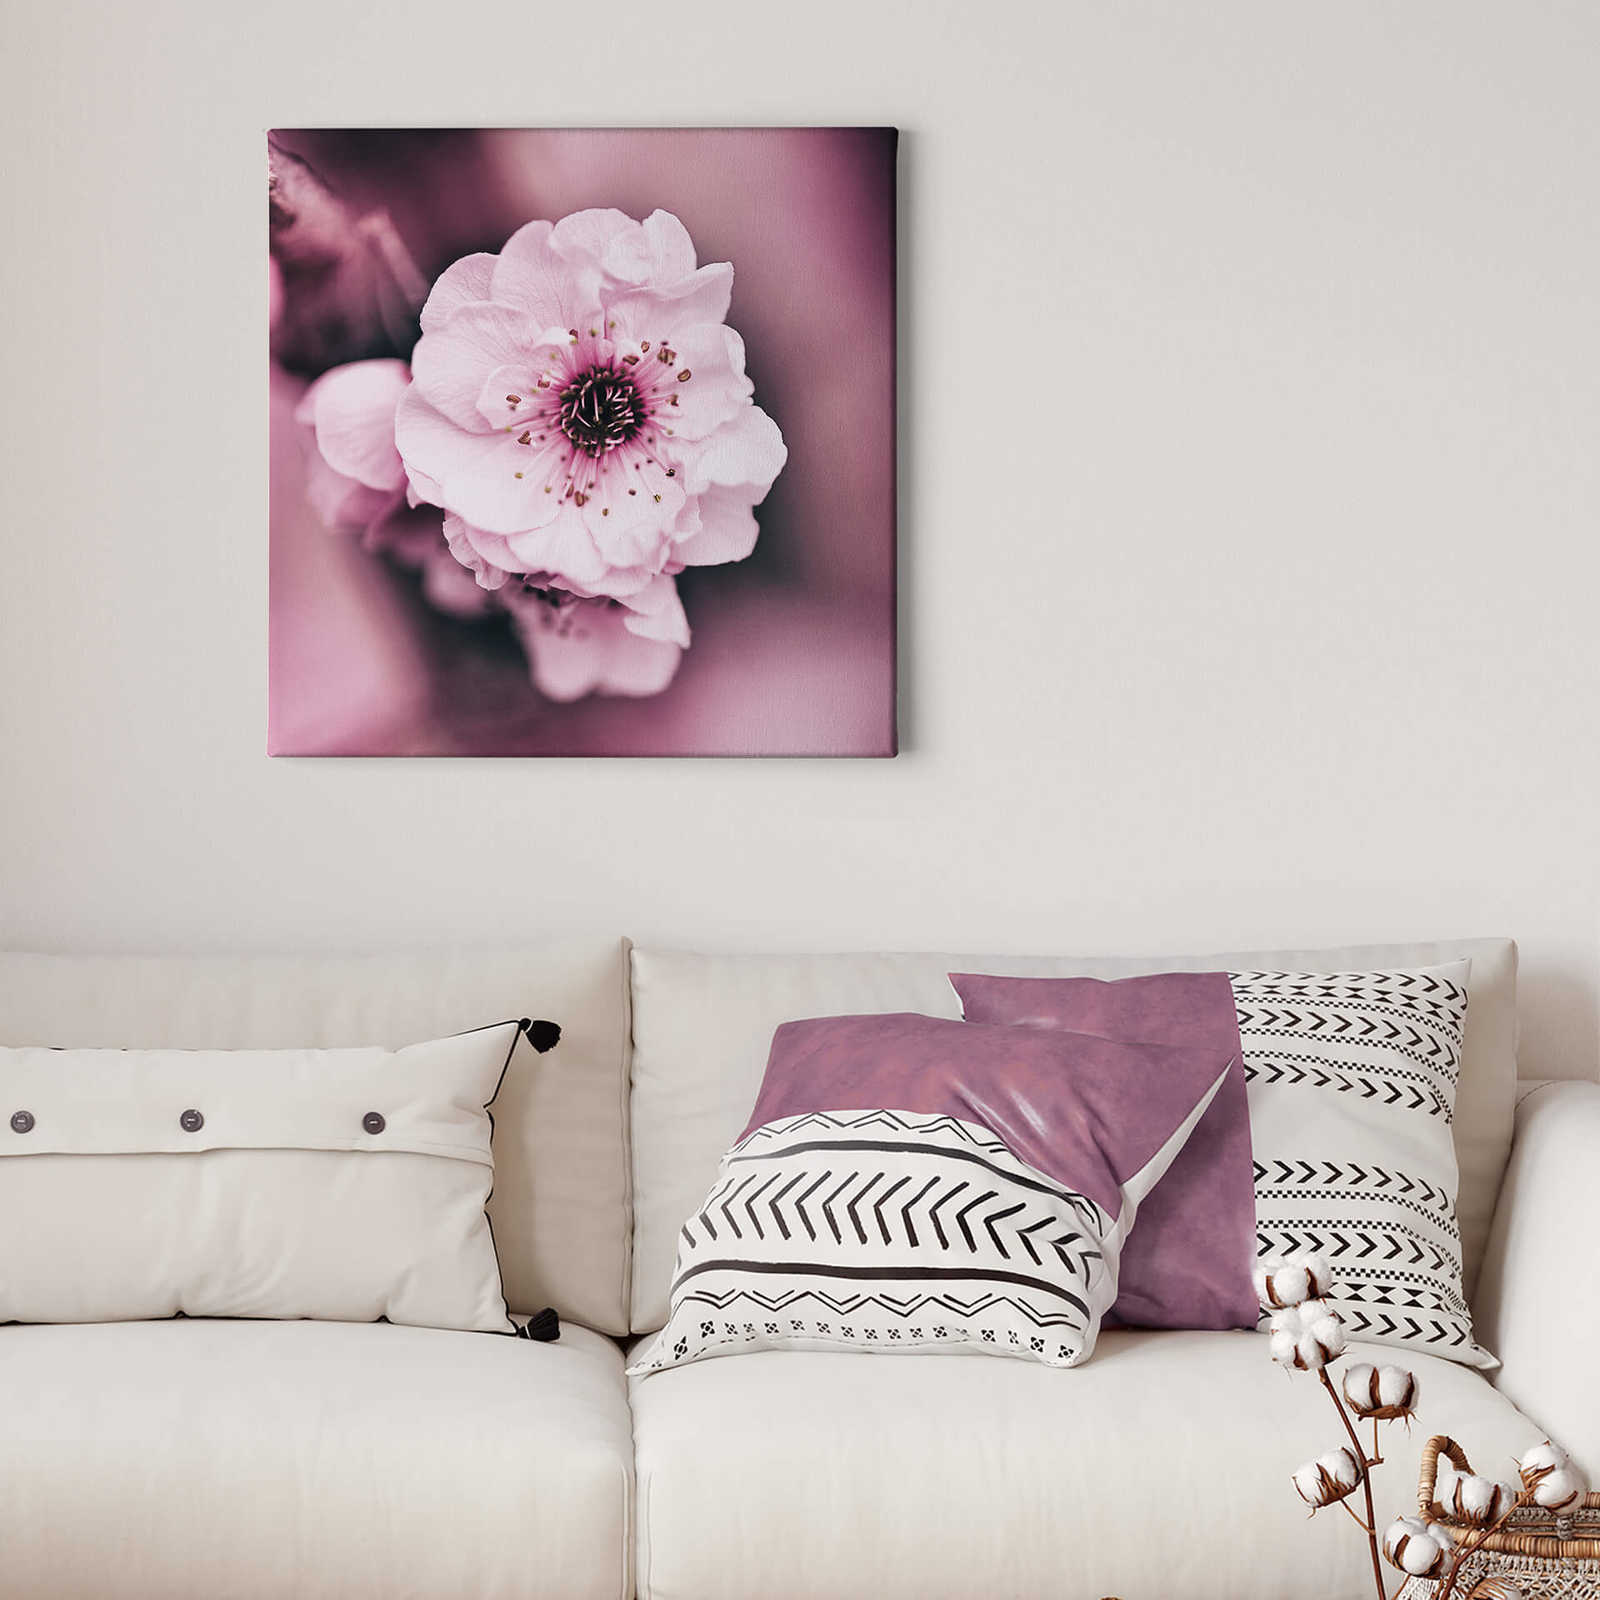             Bloemrijk Canvas schilderij roze bloesems detail - 0,50 m x 0,50 m
        